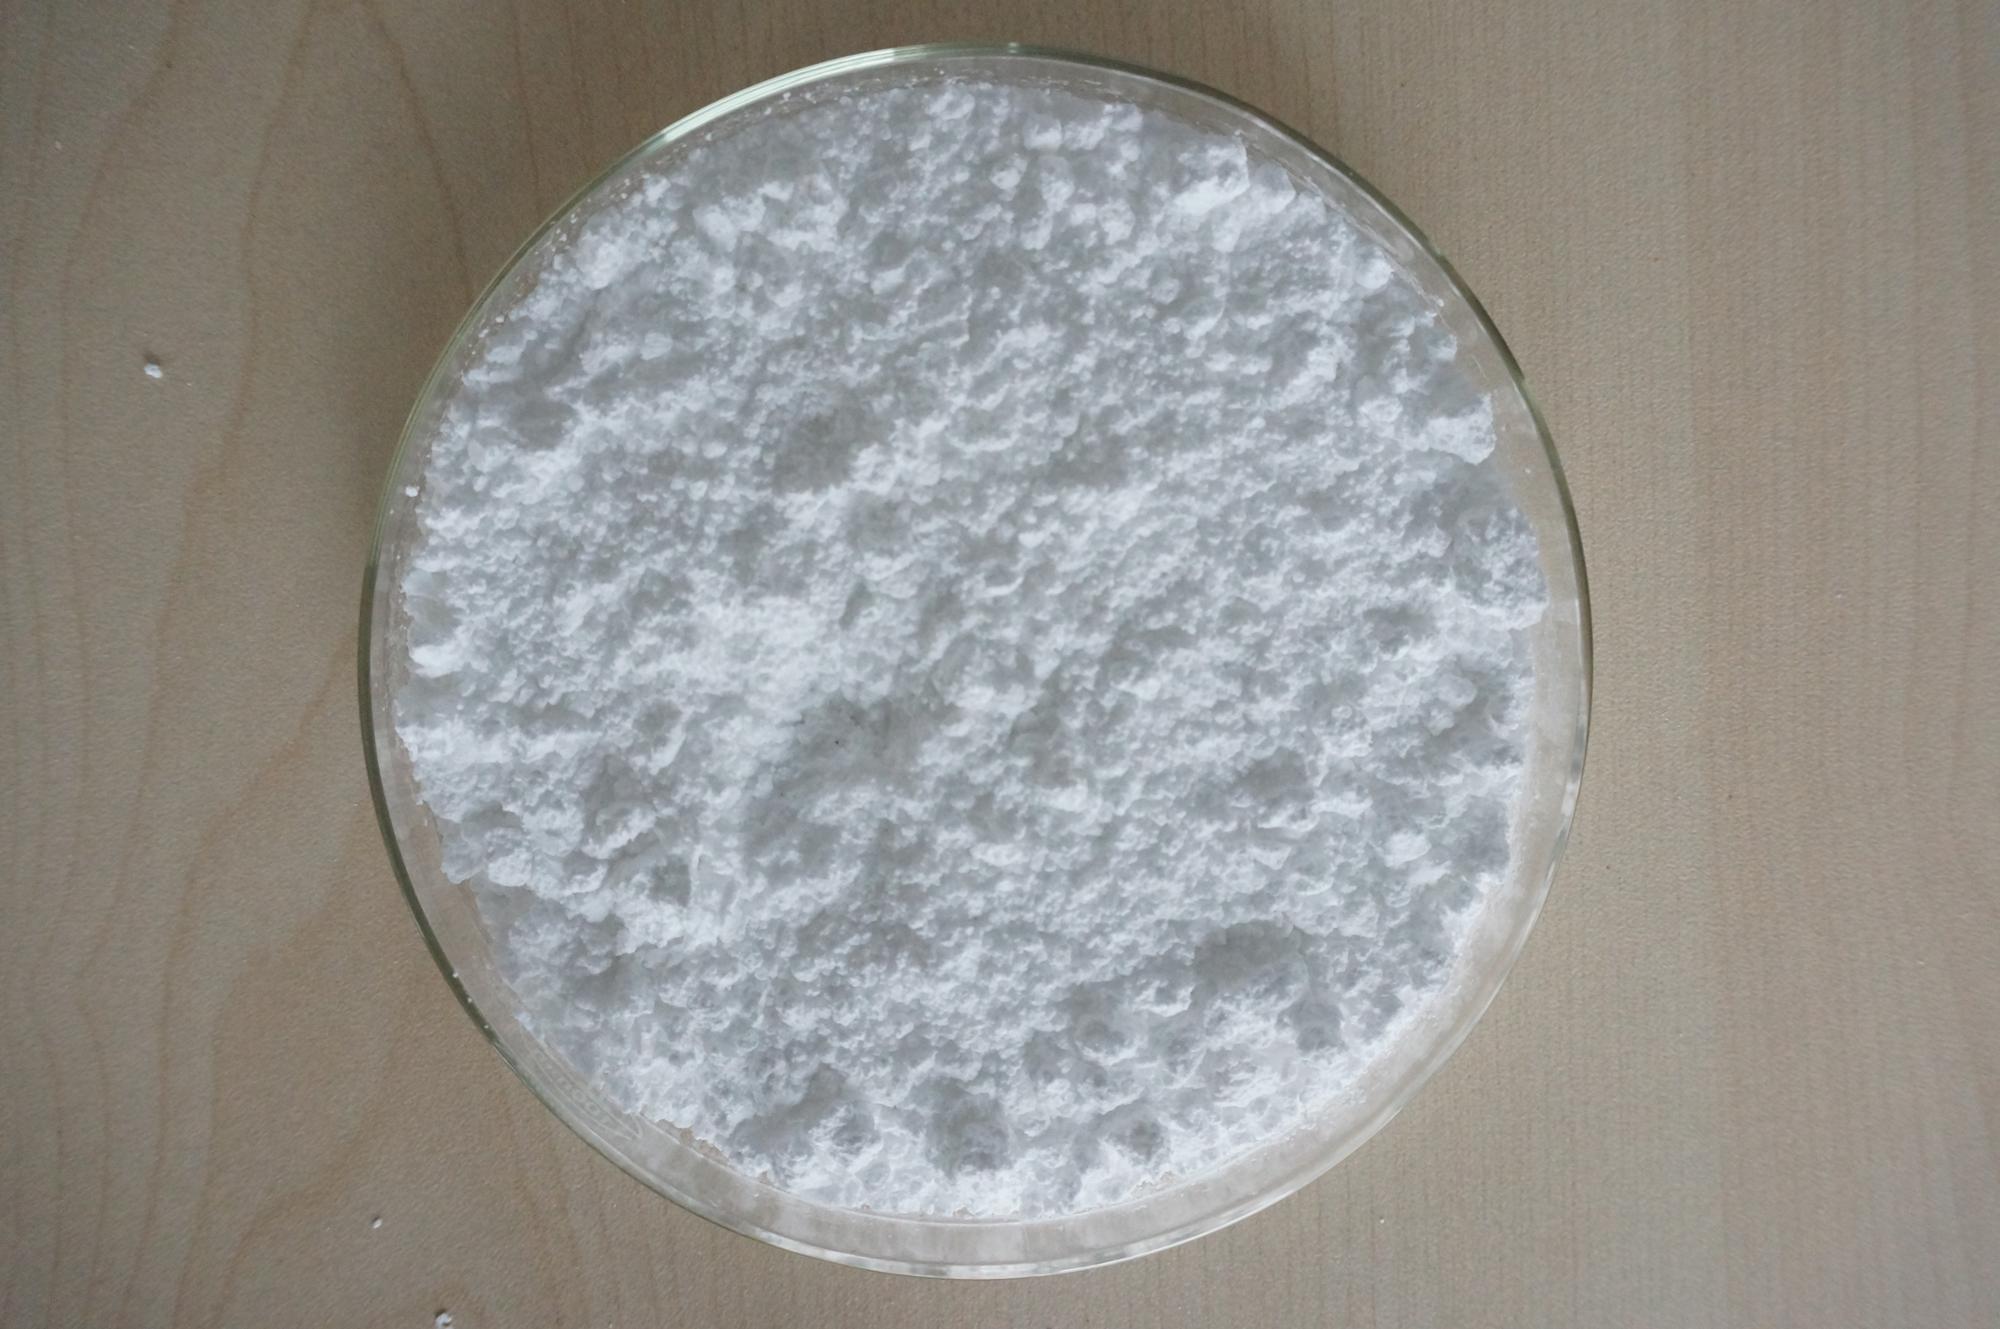 Tianeptin salt